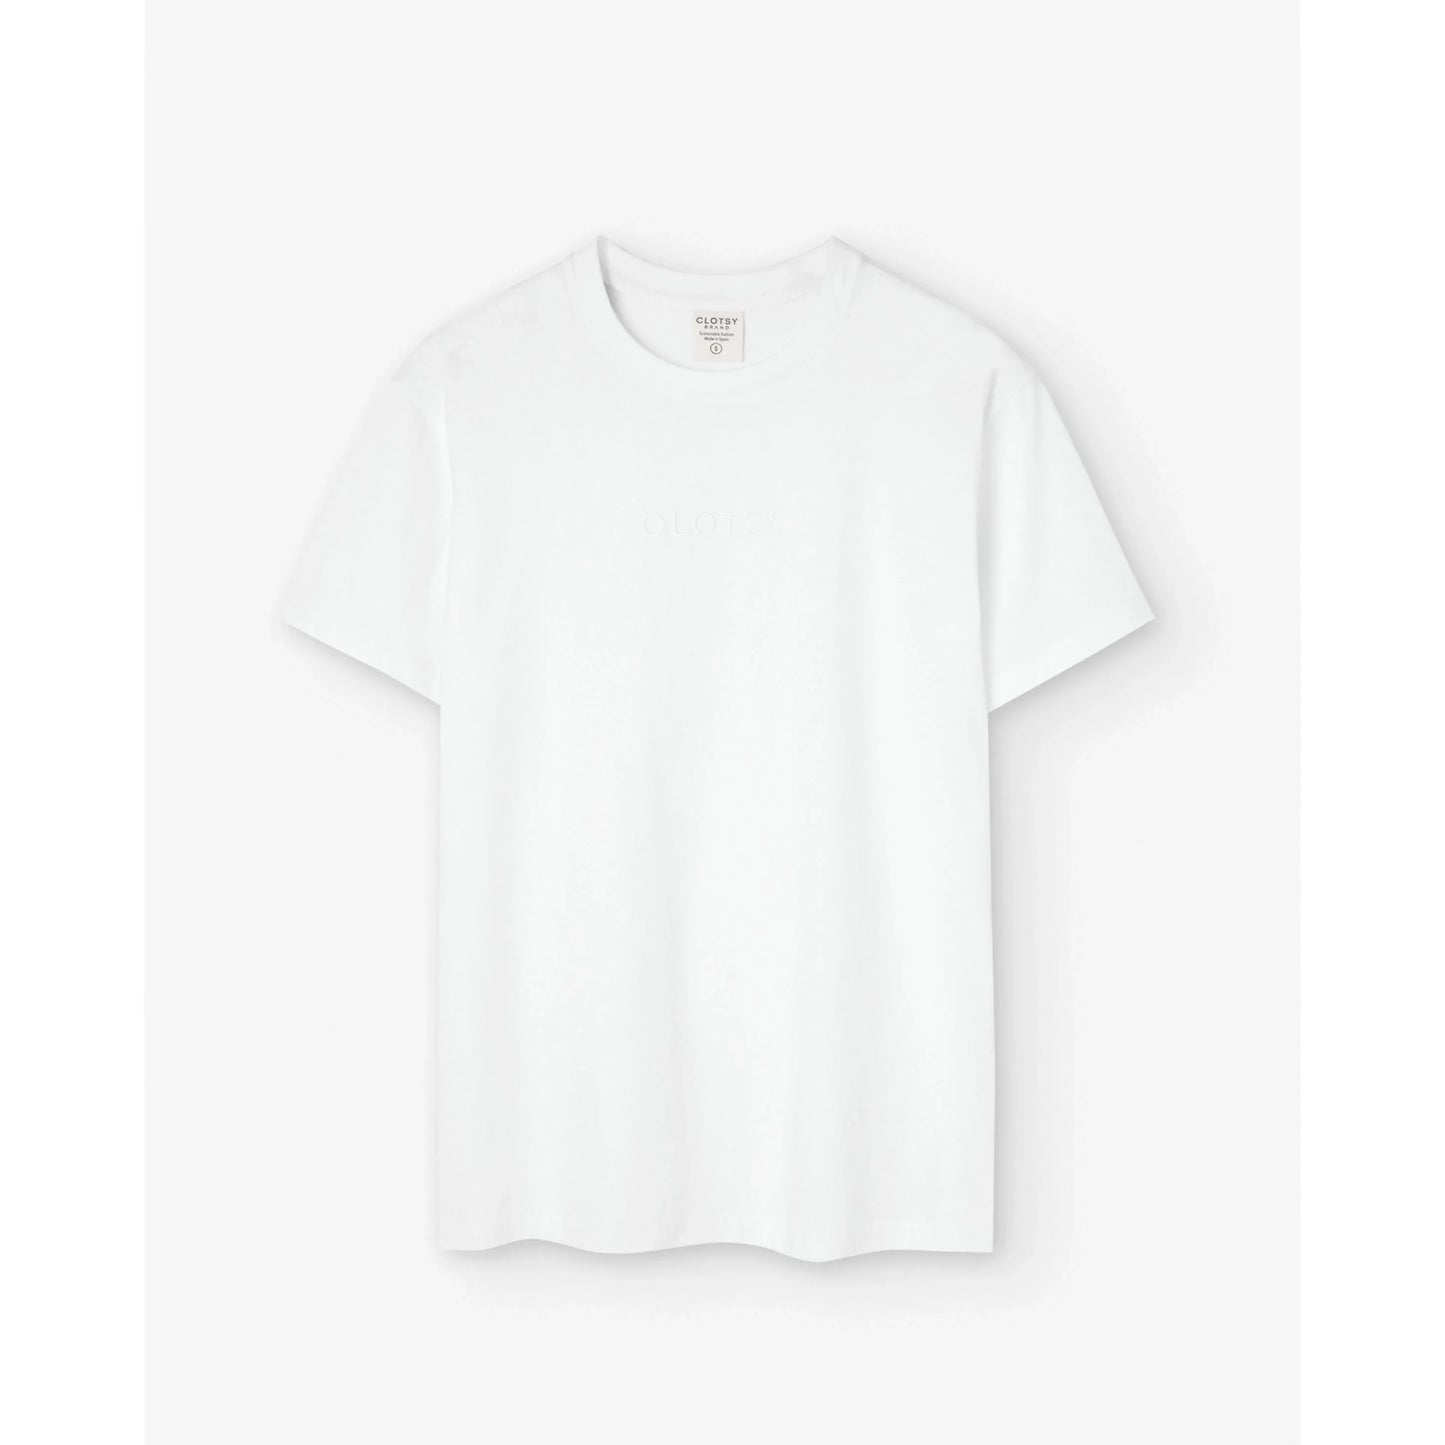 Camiseta blanca basic • unisex